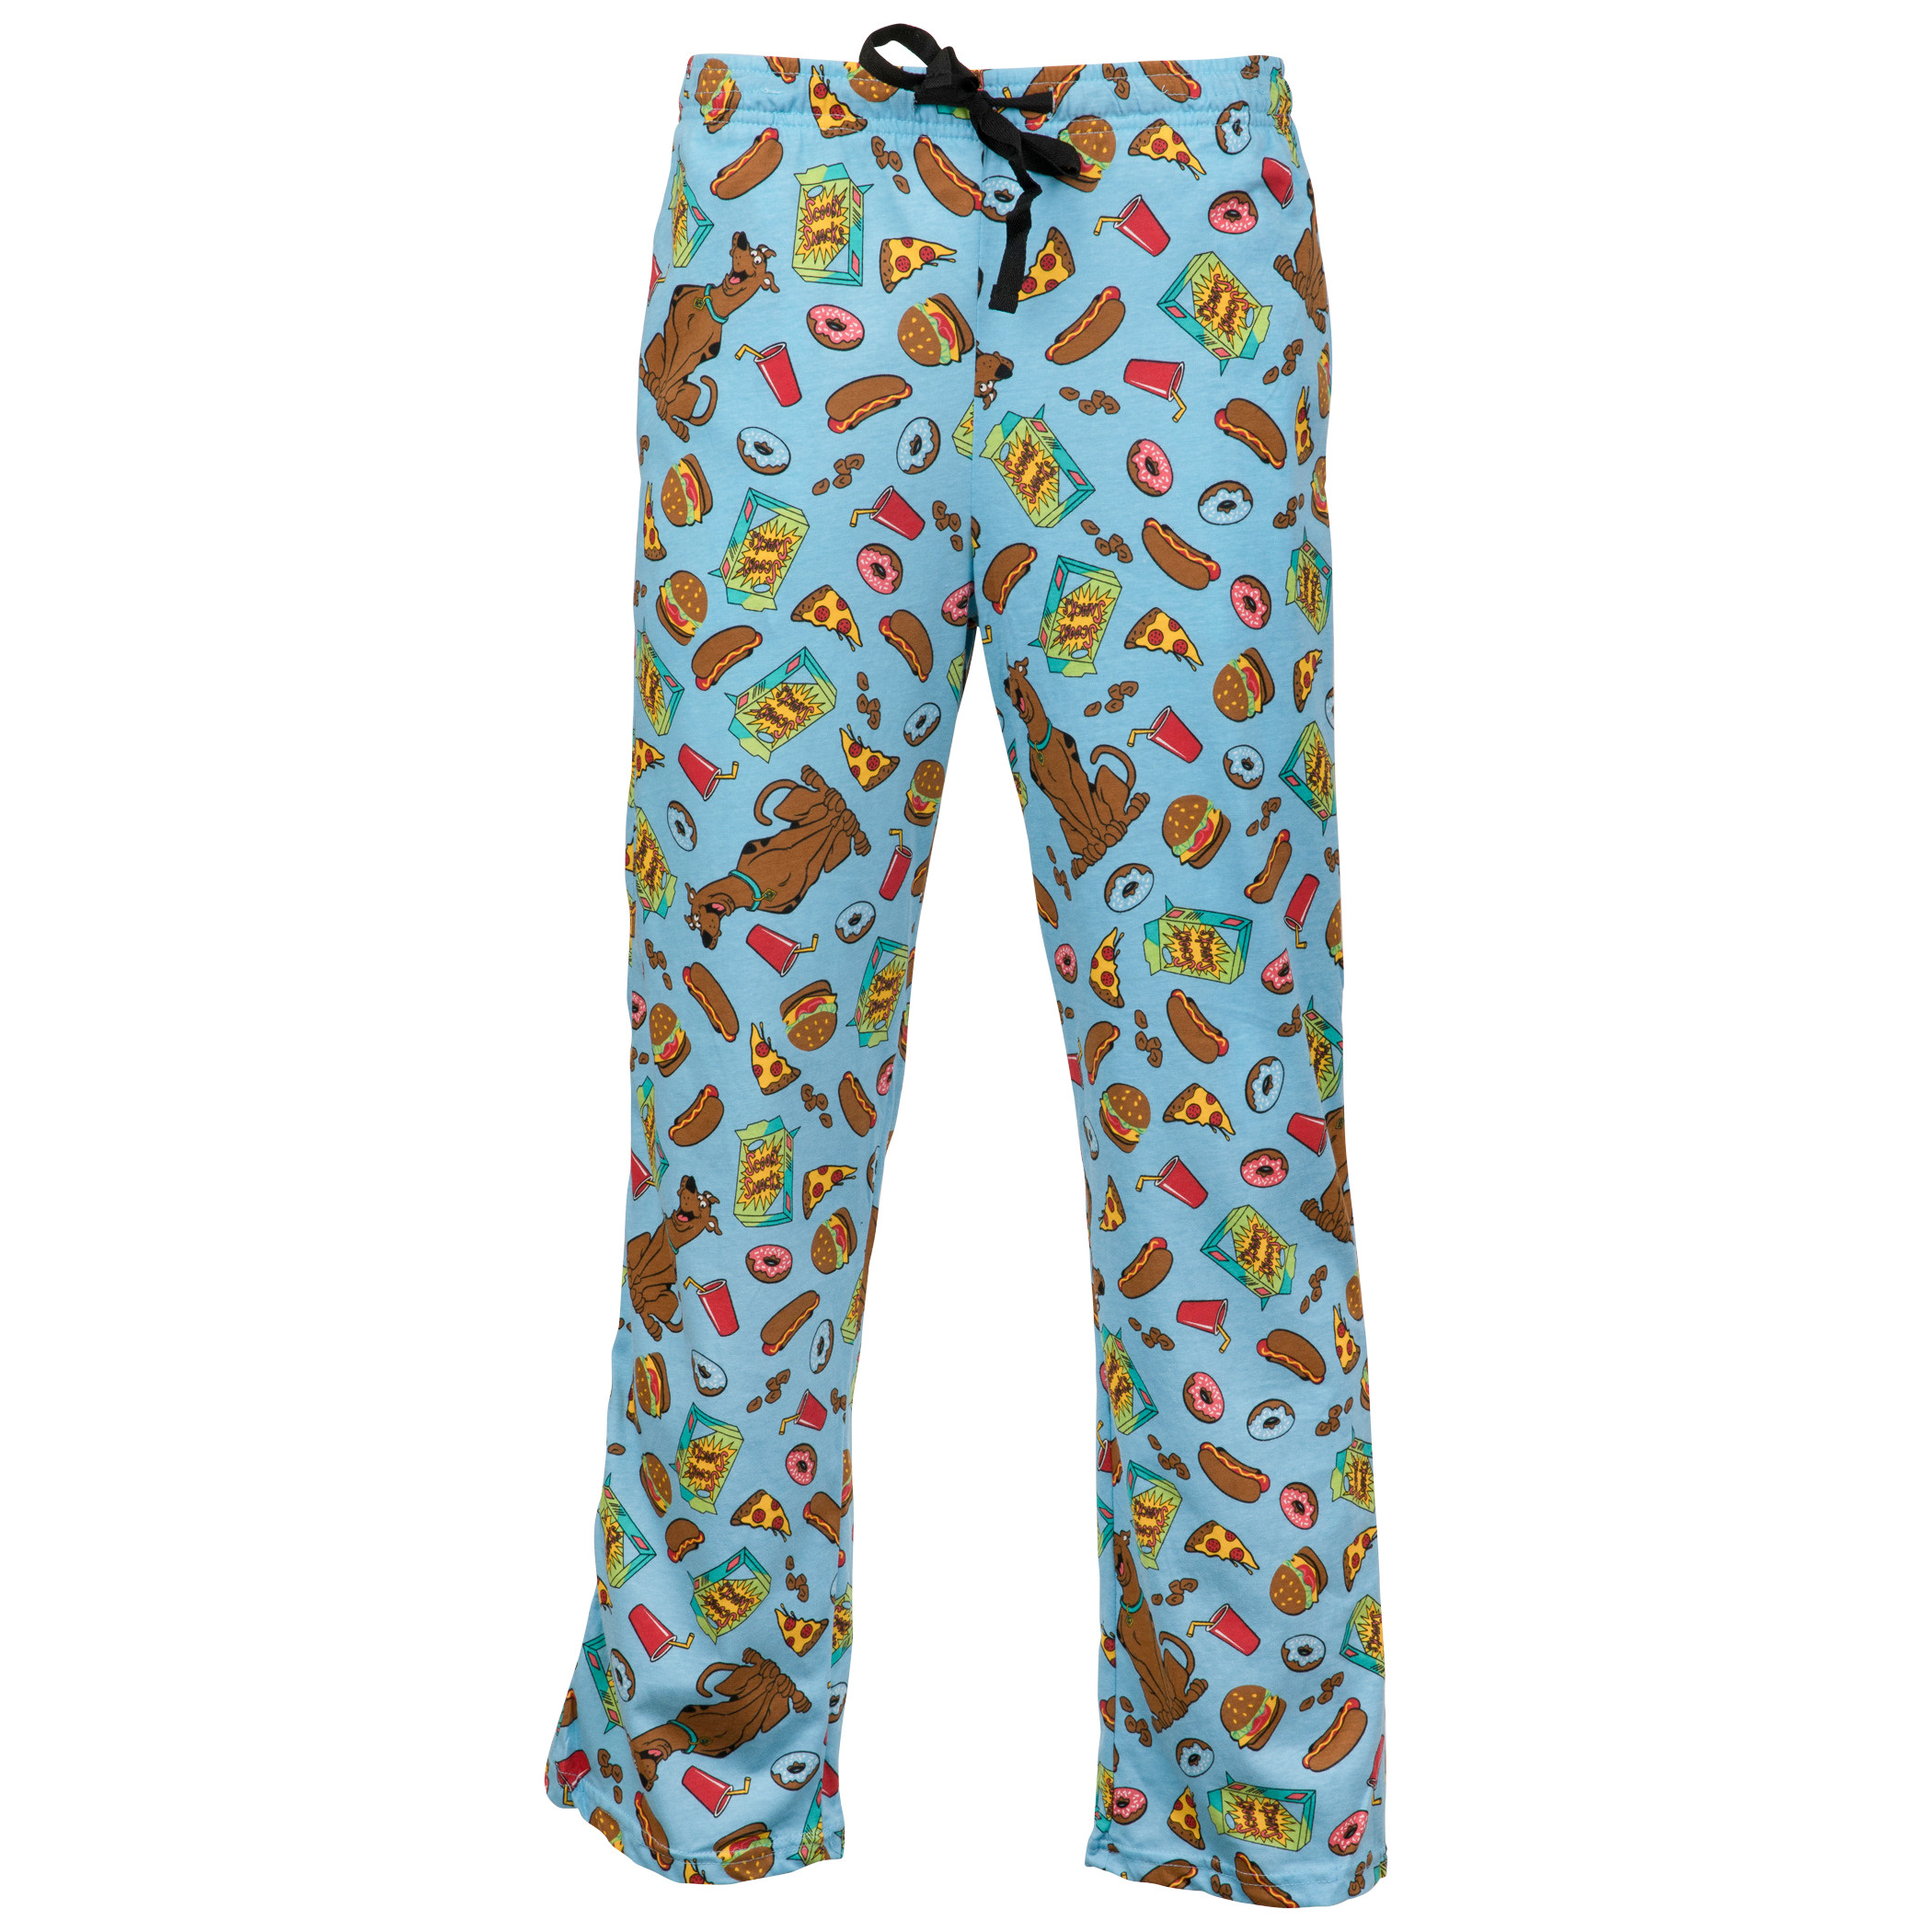 Scooby Doo Scooby Snacks Men's Sleep Pants-Large (36-38) - Walmart.com